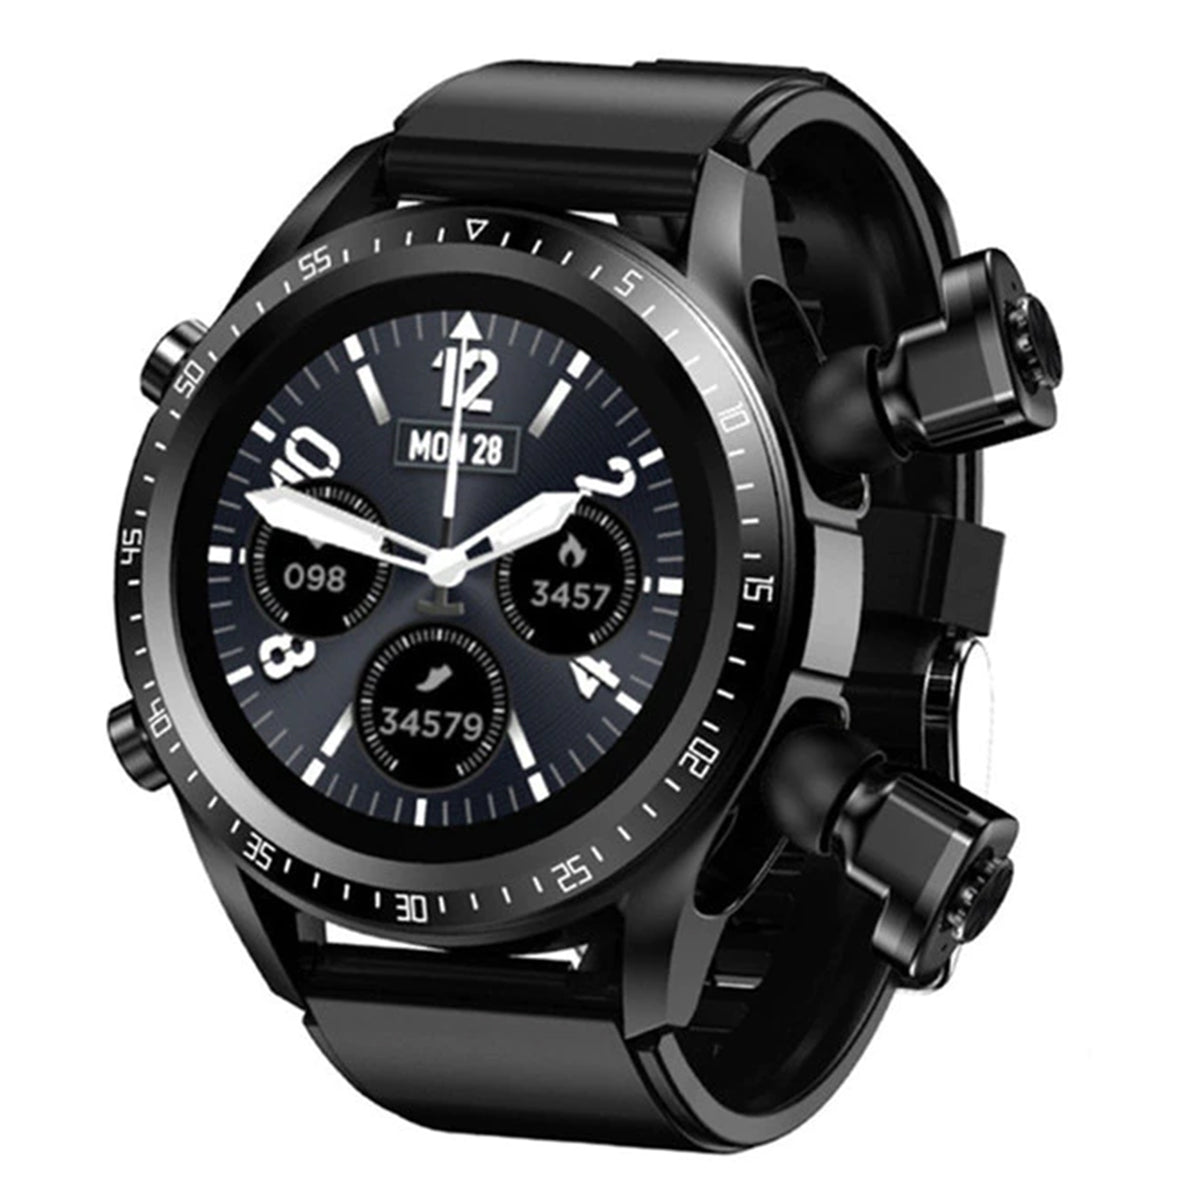 Reloj Inteligente Smart Watch Fralugio Jm03 Y Audífonos Tws